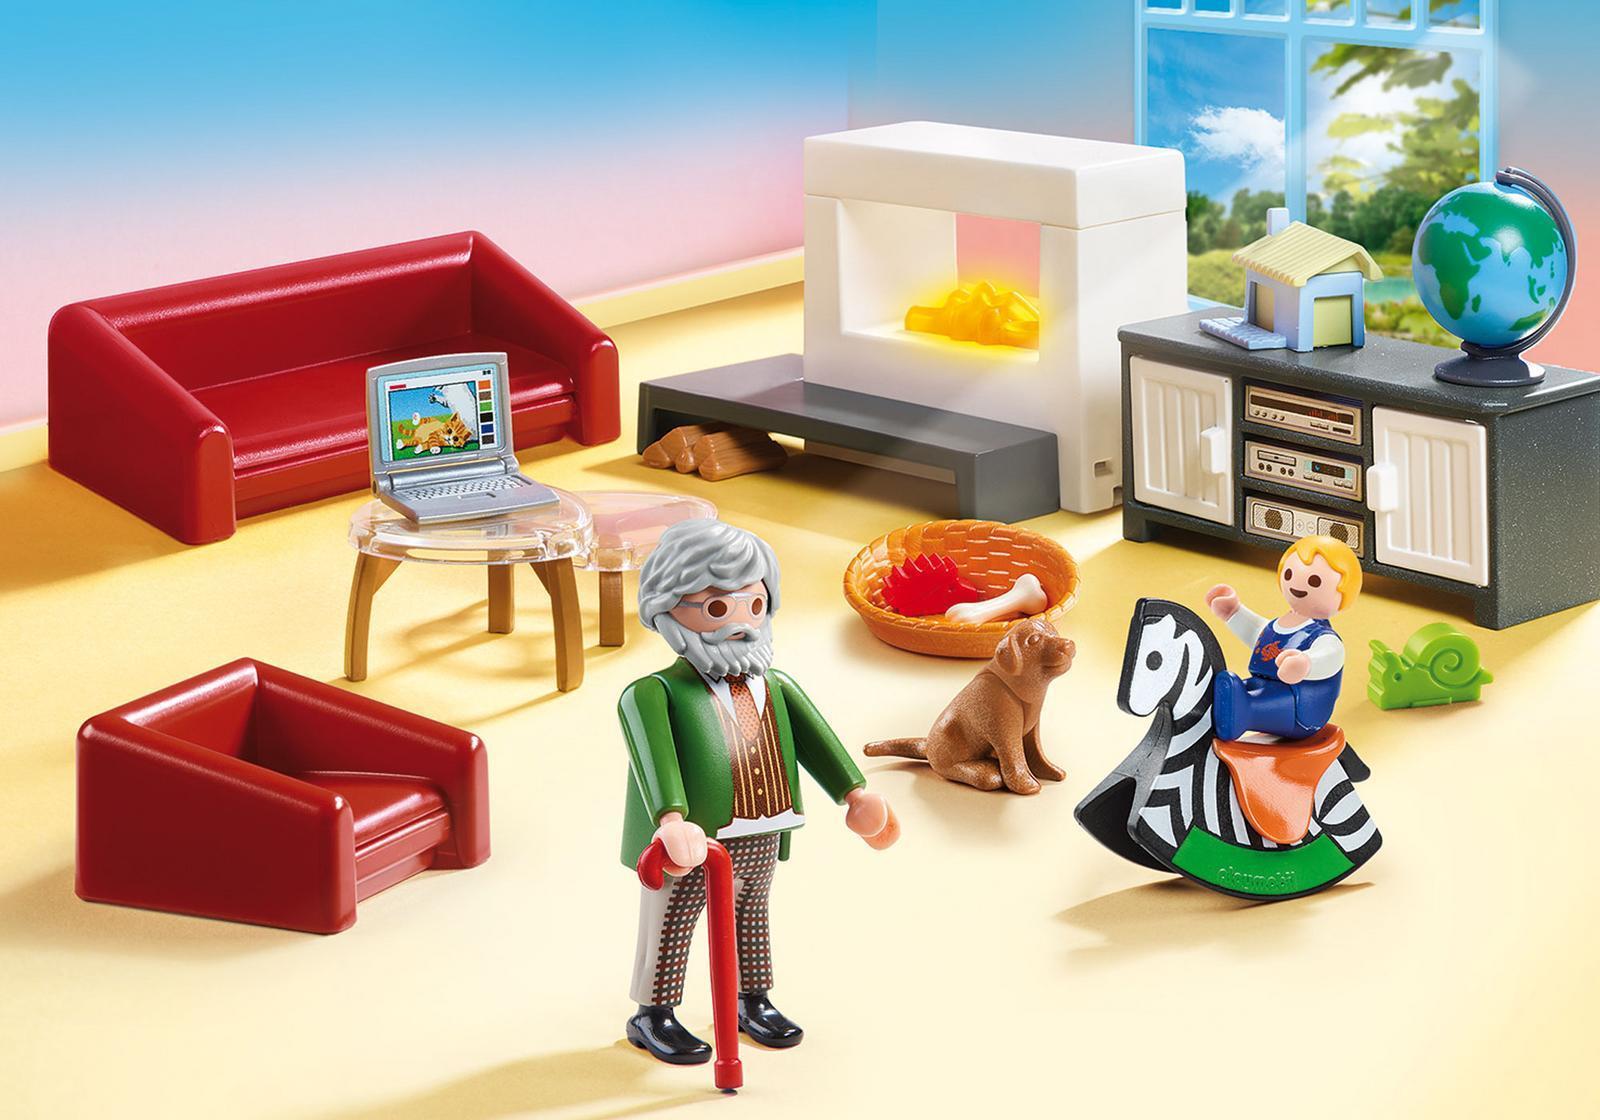 Playmobil Dollhouse 70207 - Aktion/Abenteuer - Junge/Mädchen - 4 Jahr(e) - Mehrfarben (70207) von PLAYMOBIL